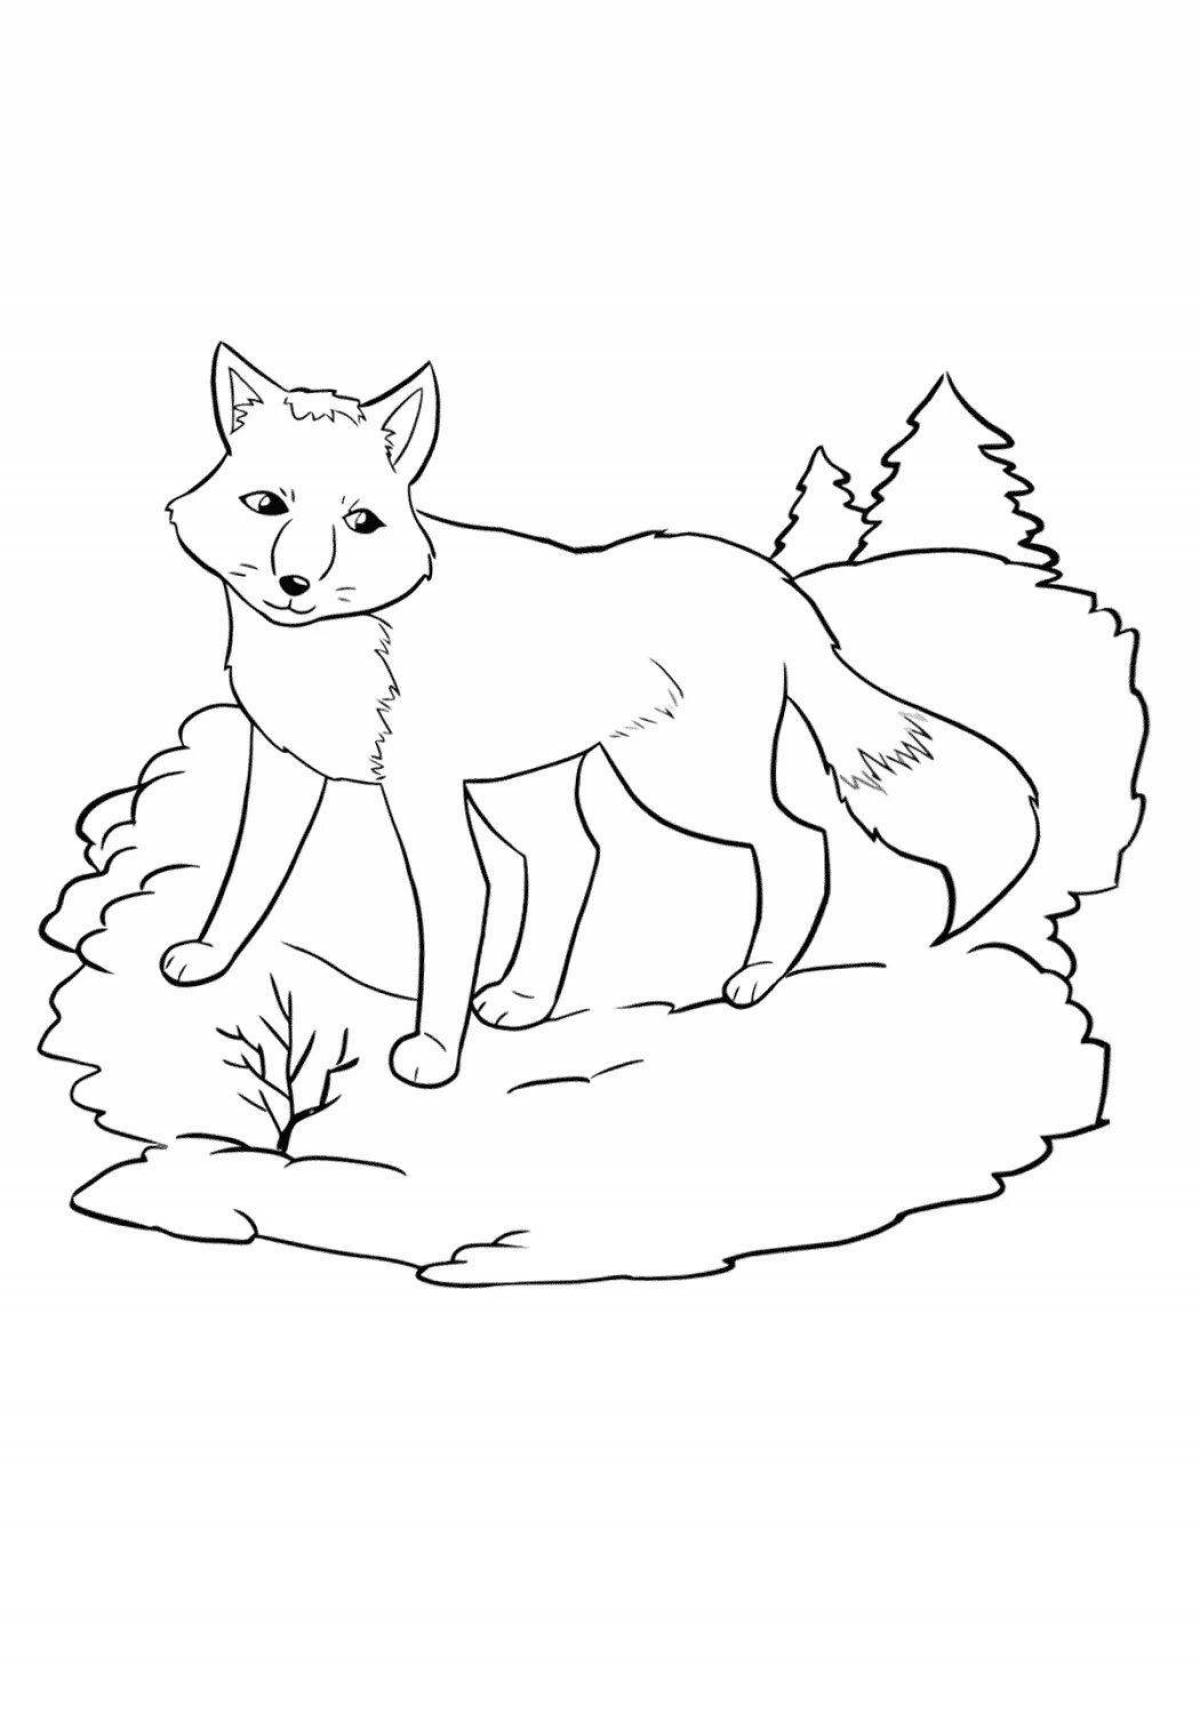 Праздничная раскраска лисы для детей